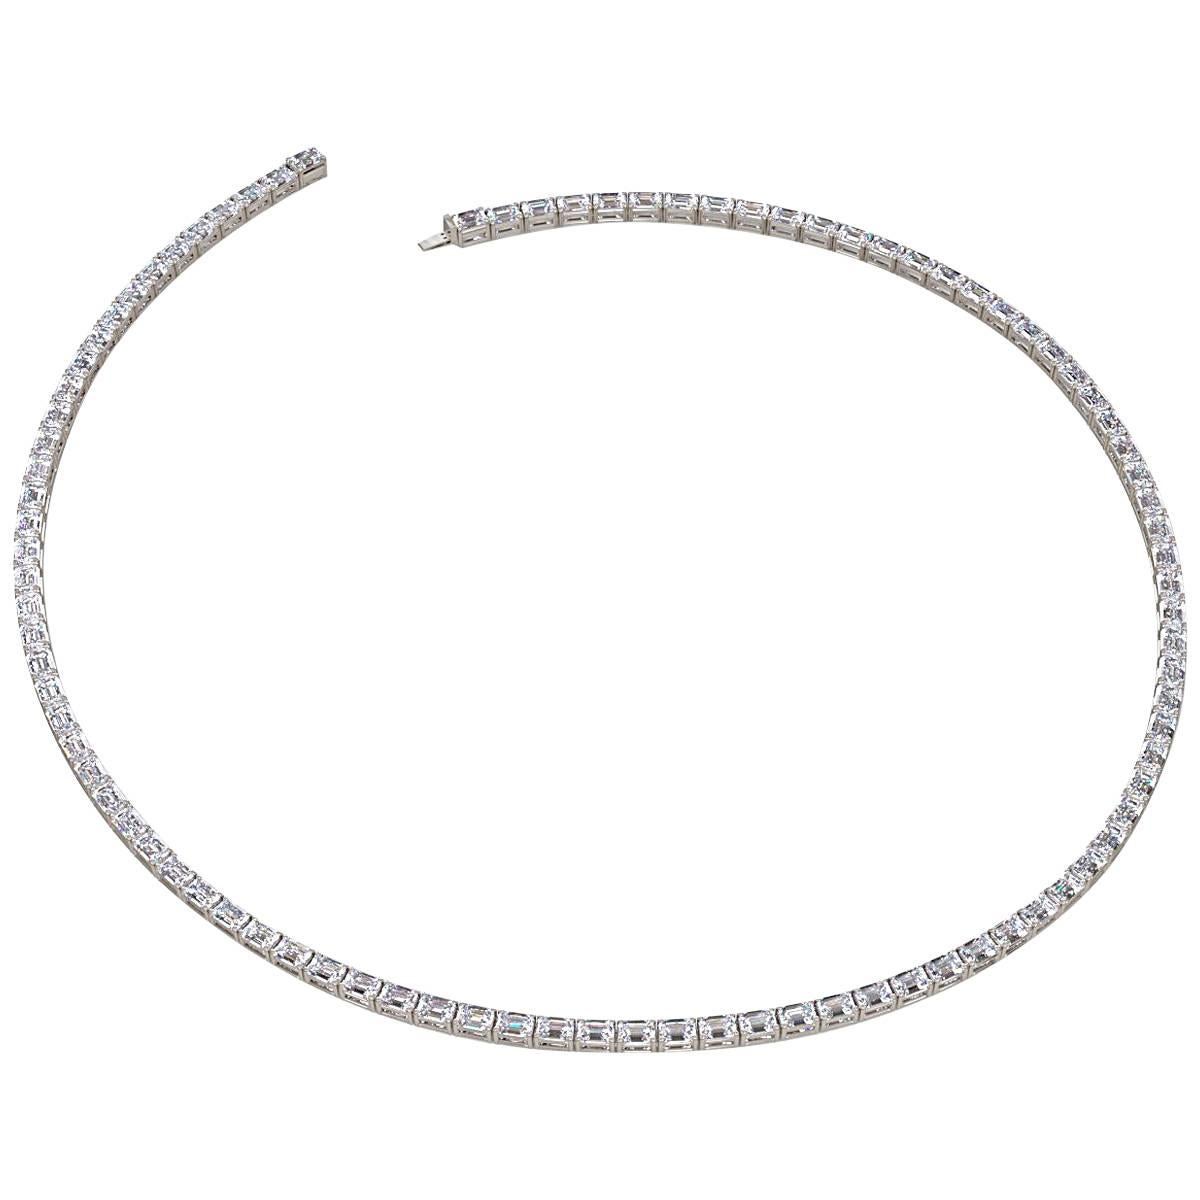 Emilio Jewelry, collier de diamants taille émeraude certifié Gia de 30,00 carats